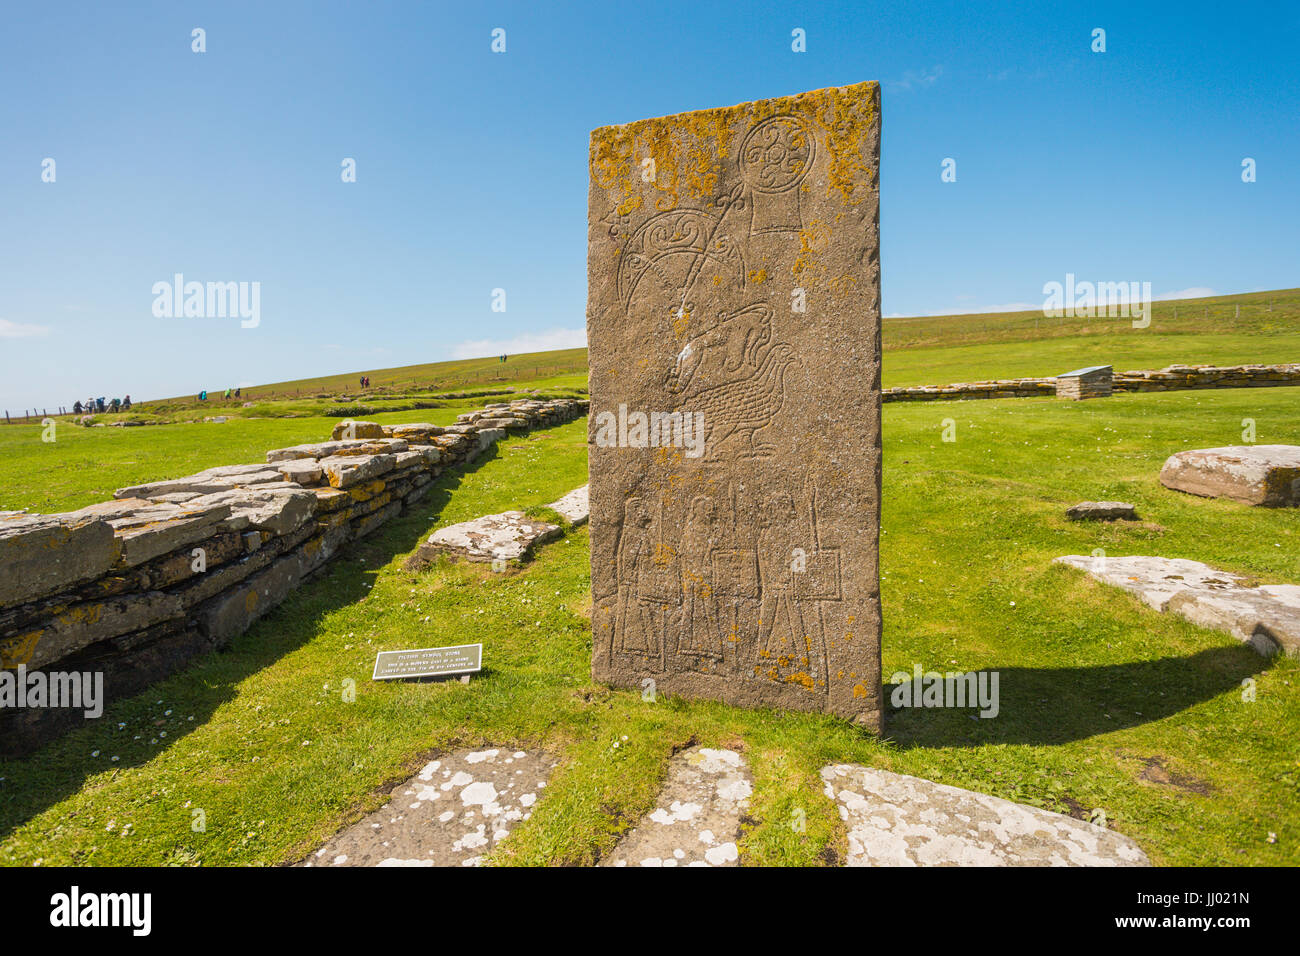 Pictish symbol stone, Brough of Birsay, Orkney Scotland UK Stock Photo